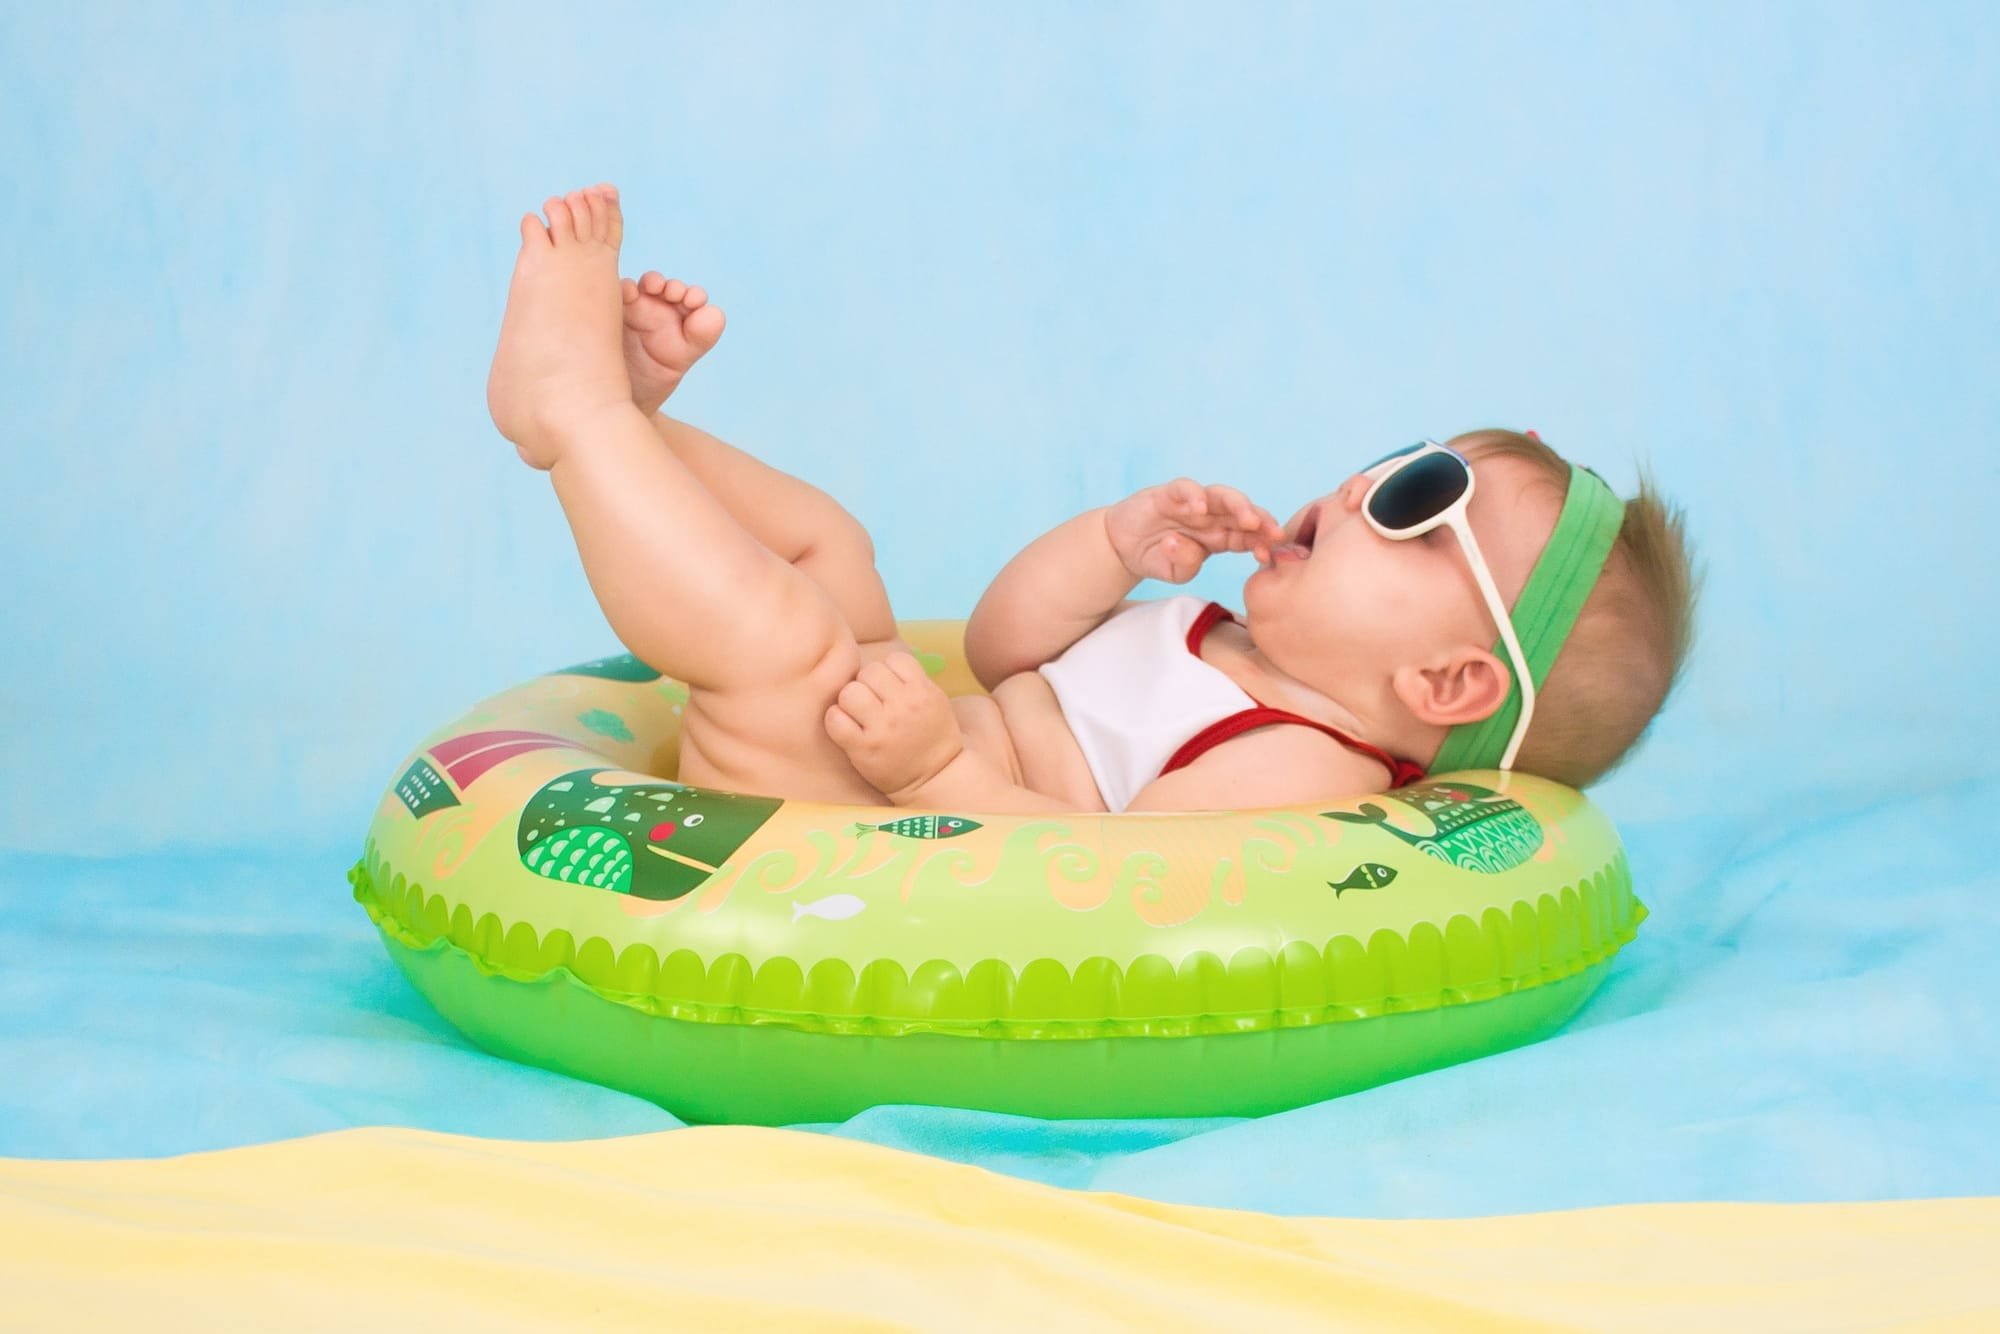 Radosne Pluskanie: Dlaczego nauka pływania niemowląt to klucz do zdrowego rozwoju dziecka